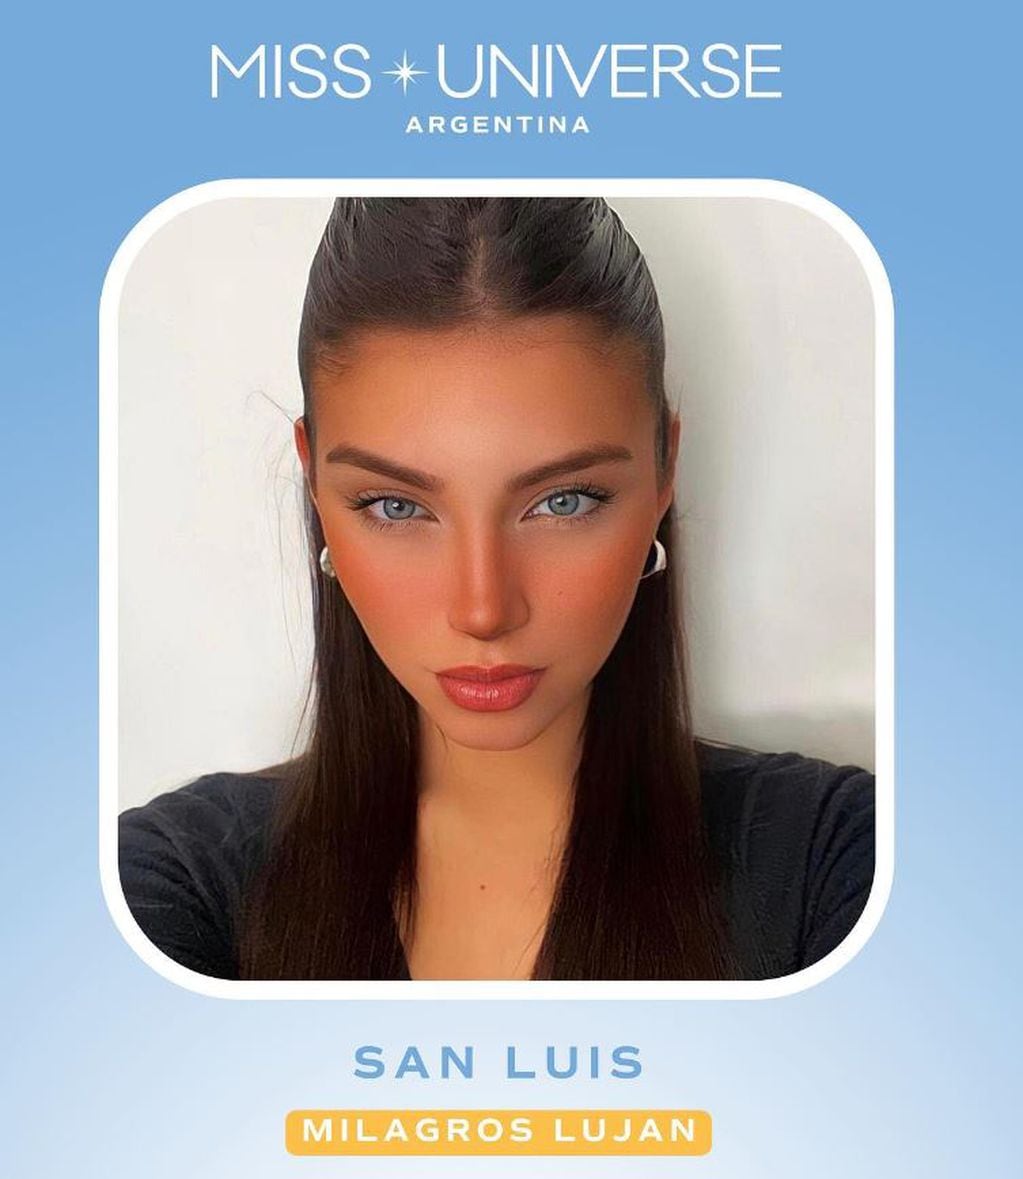 Miss San Luis, Milagros Lujan